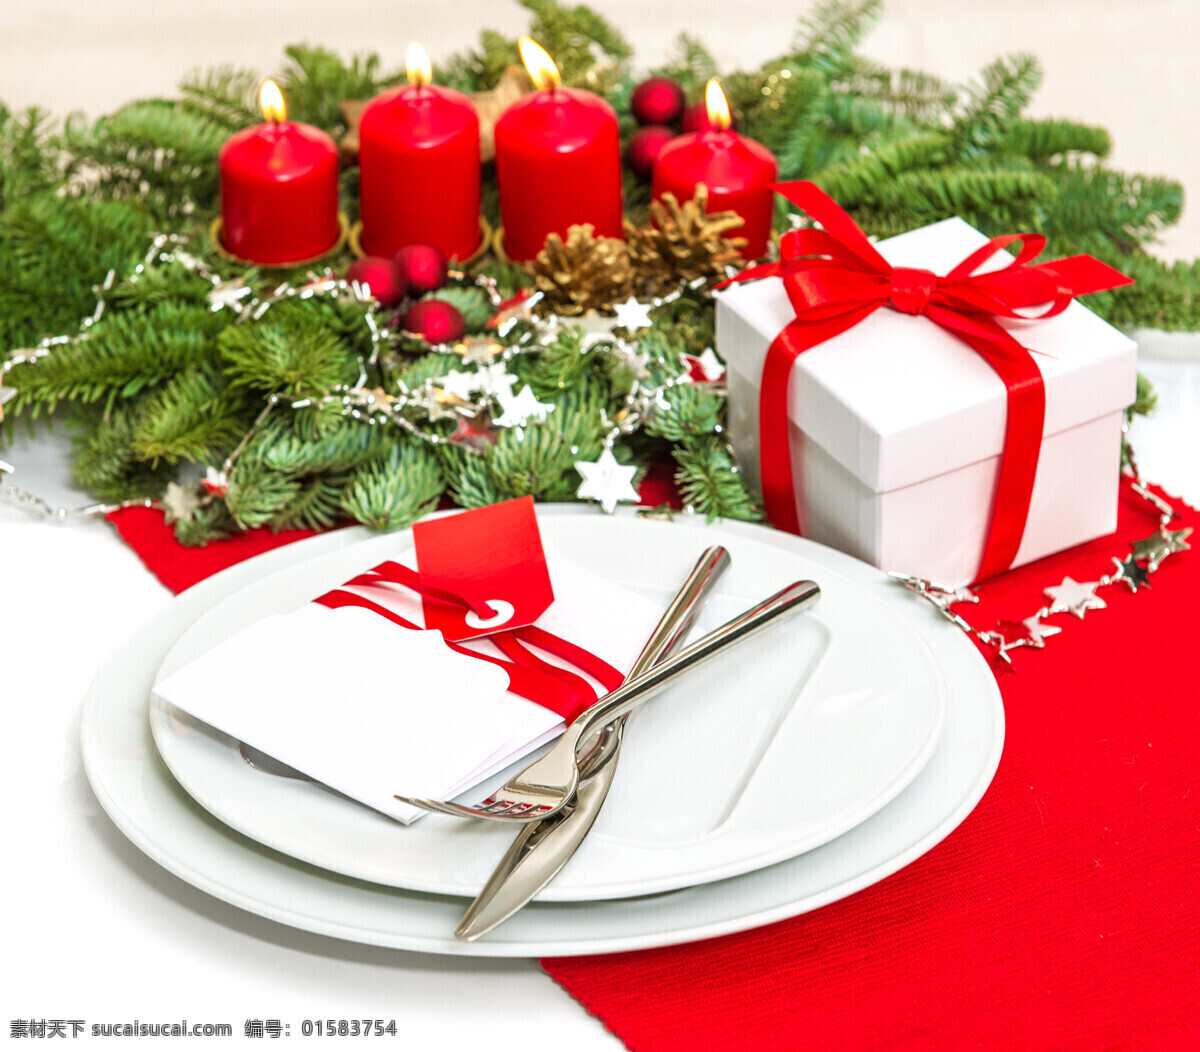 松枝 餐具 蜡烛 烛光 礼物 叉子 刀 盘子 圣诞节 美食图片 餐饮美食